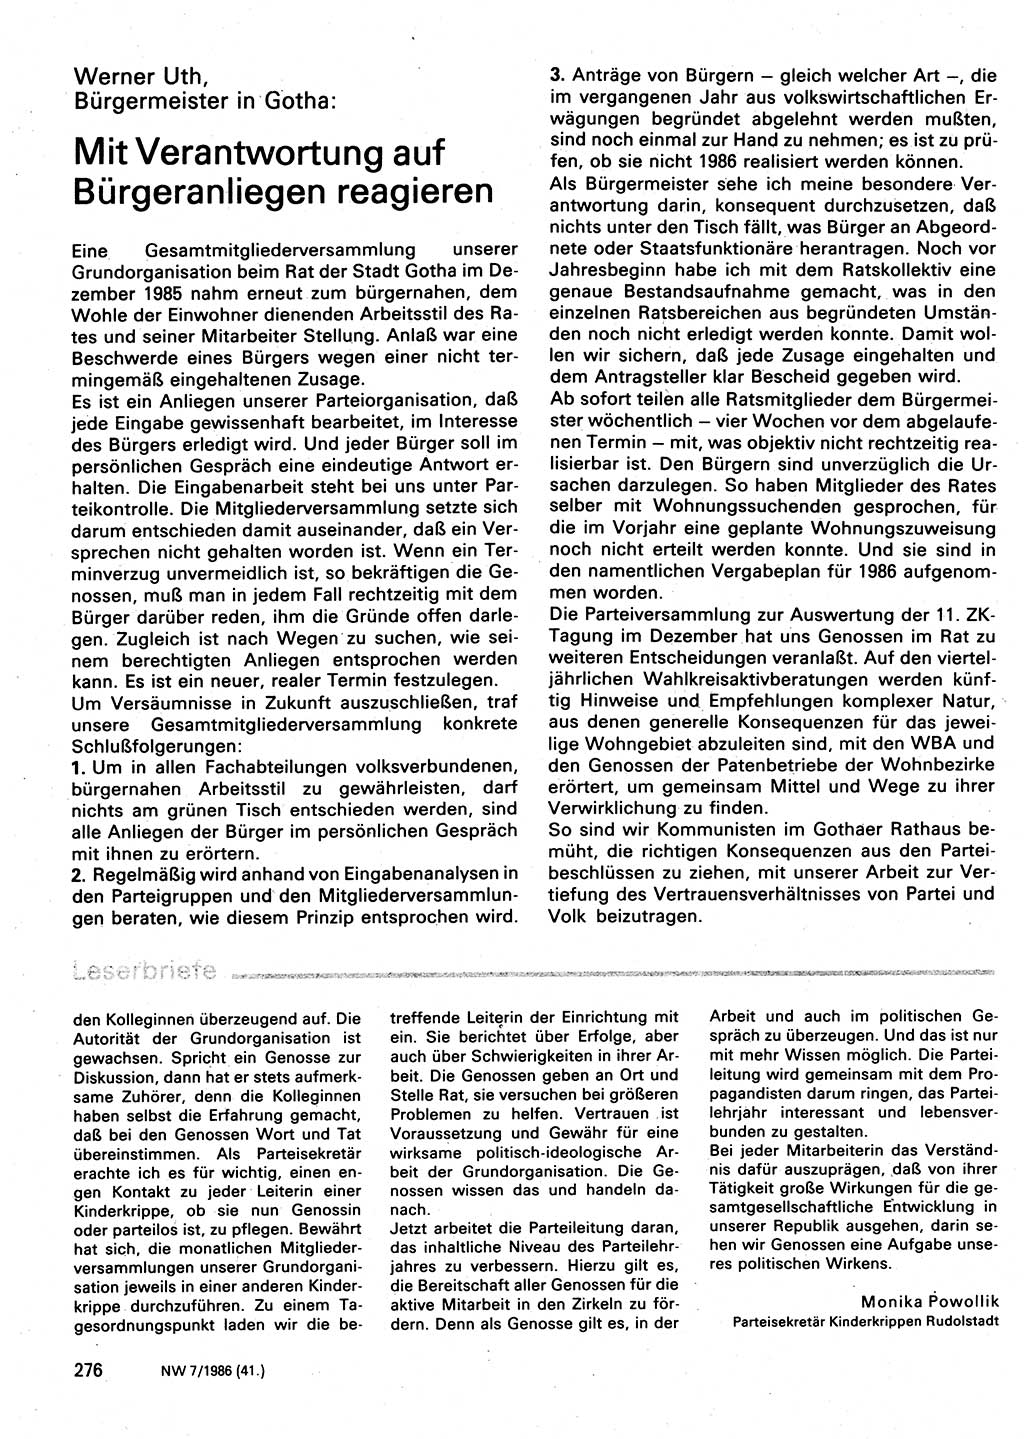 Neuer Weg (NW), Organ des Zentralkomitees (ZK) der SED (Sozialistische Einheitspartei Deutschlands) für Fragen des Parteilebens, 41. Jahrgang [Deutsche Demokratische Republik (DDR)] 1986, Seite 276 (NW ZK SED DDR 1986, S. 276)